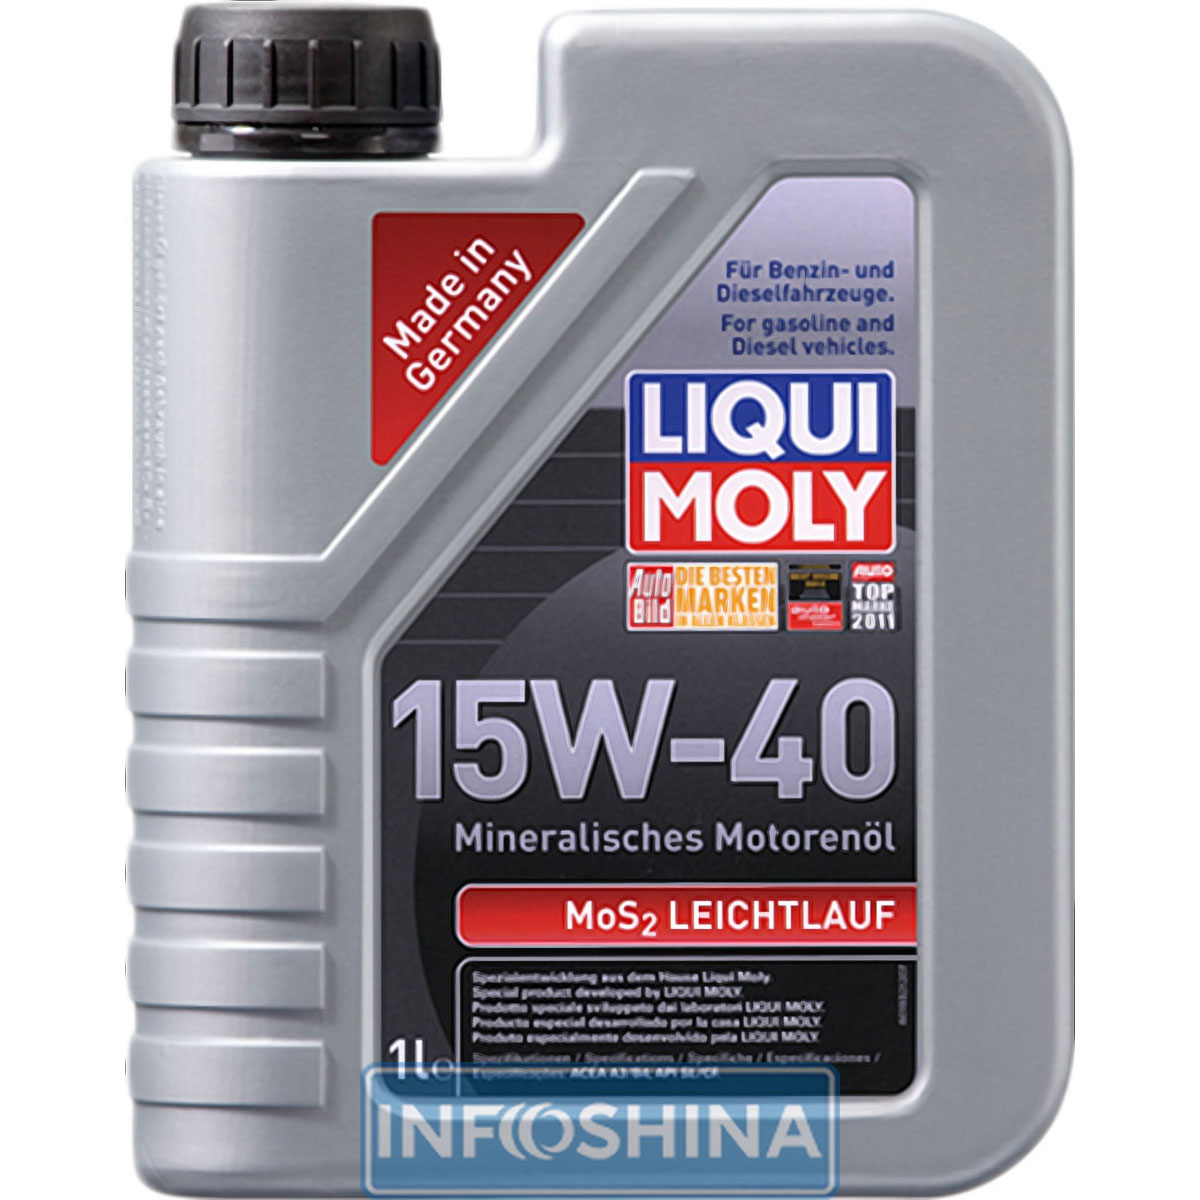 Купить масло Liqui Moly MoS2 Leichtlauf 15W-40 (1л)